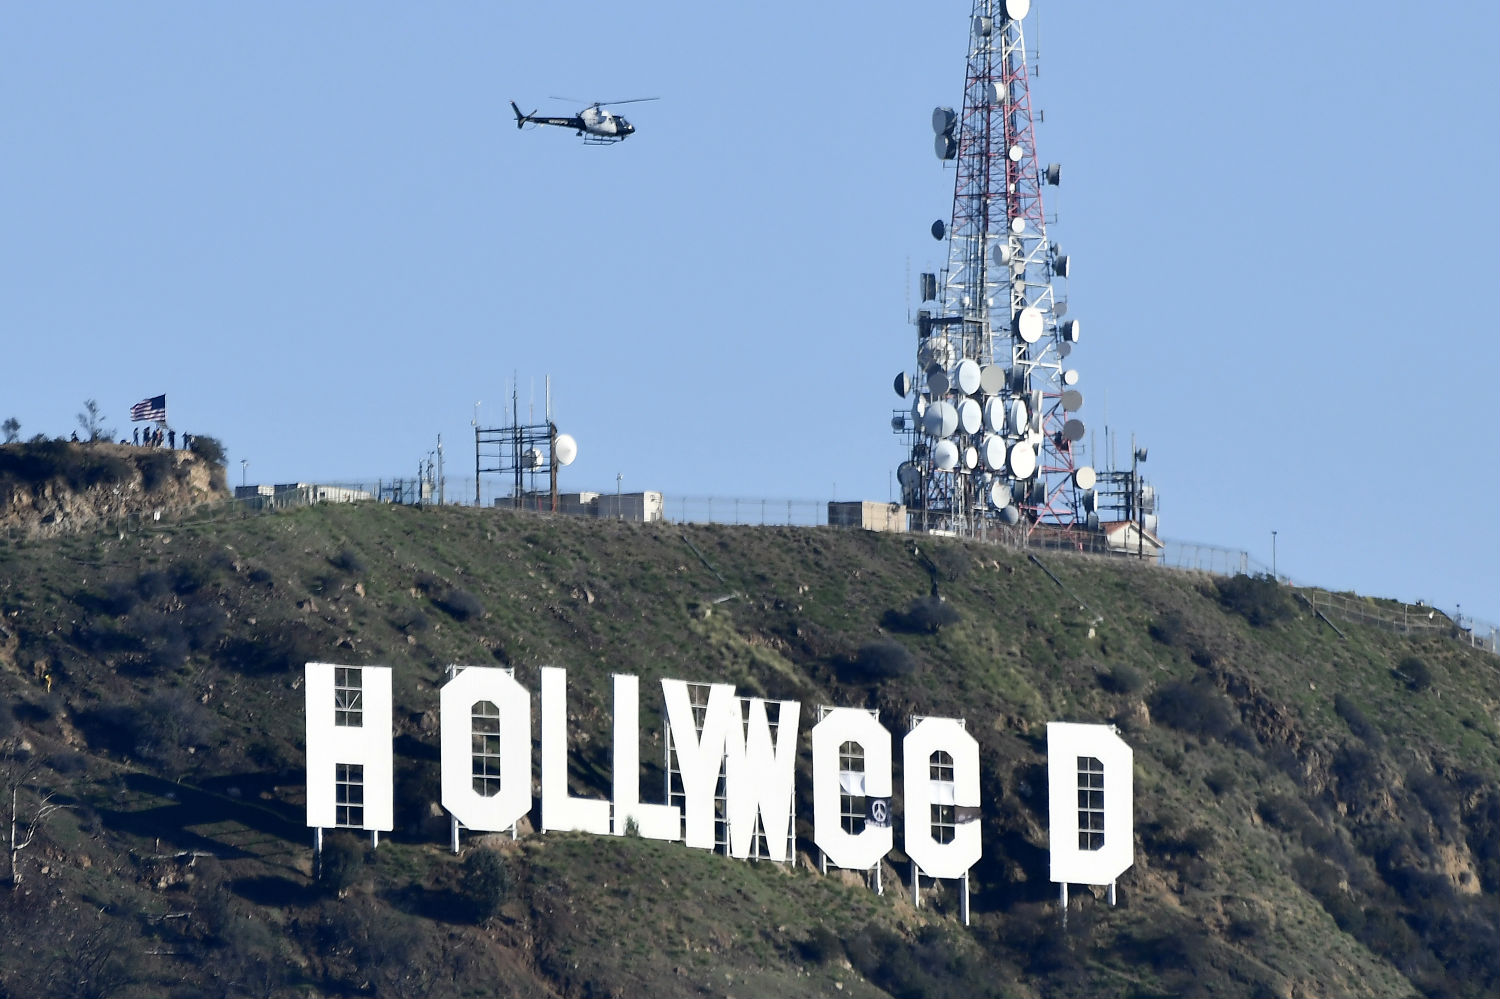 Alteran el letrero 'Hollywood' para celebrar la legalización del cannabis